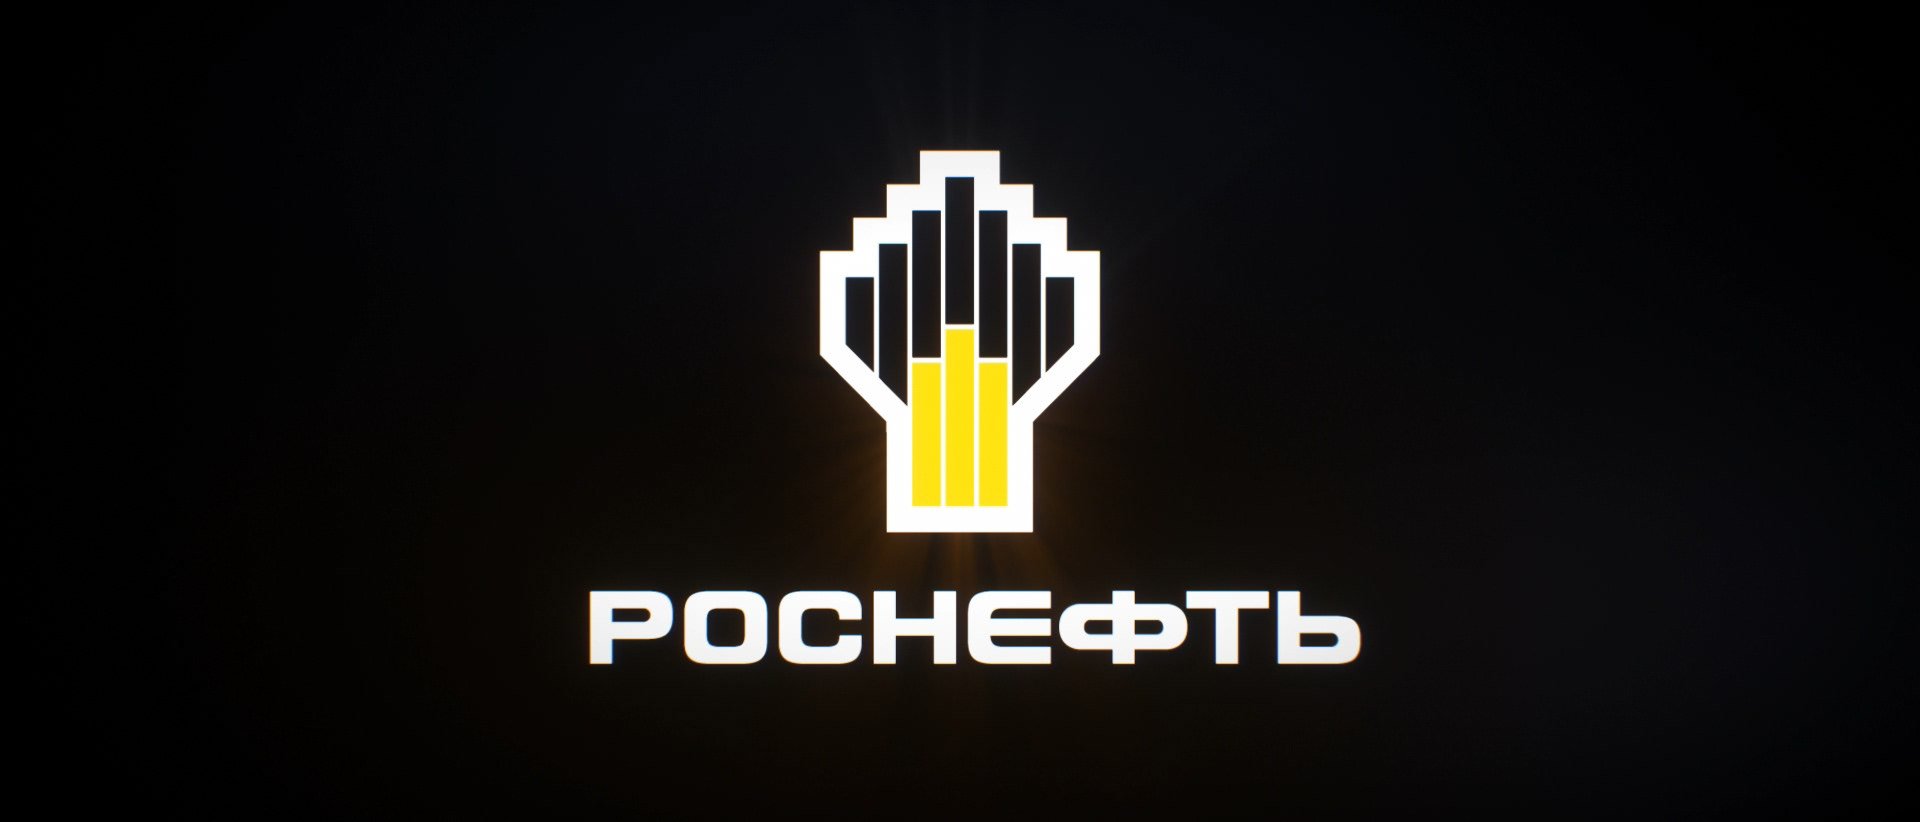 ПАО НК Роснефть логотип